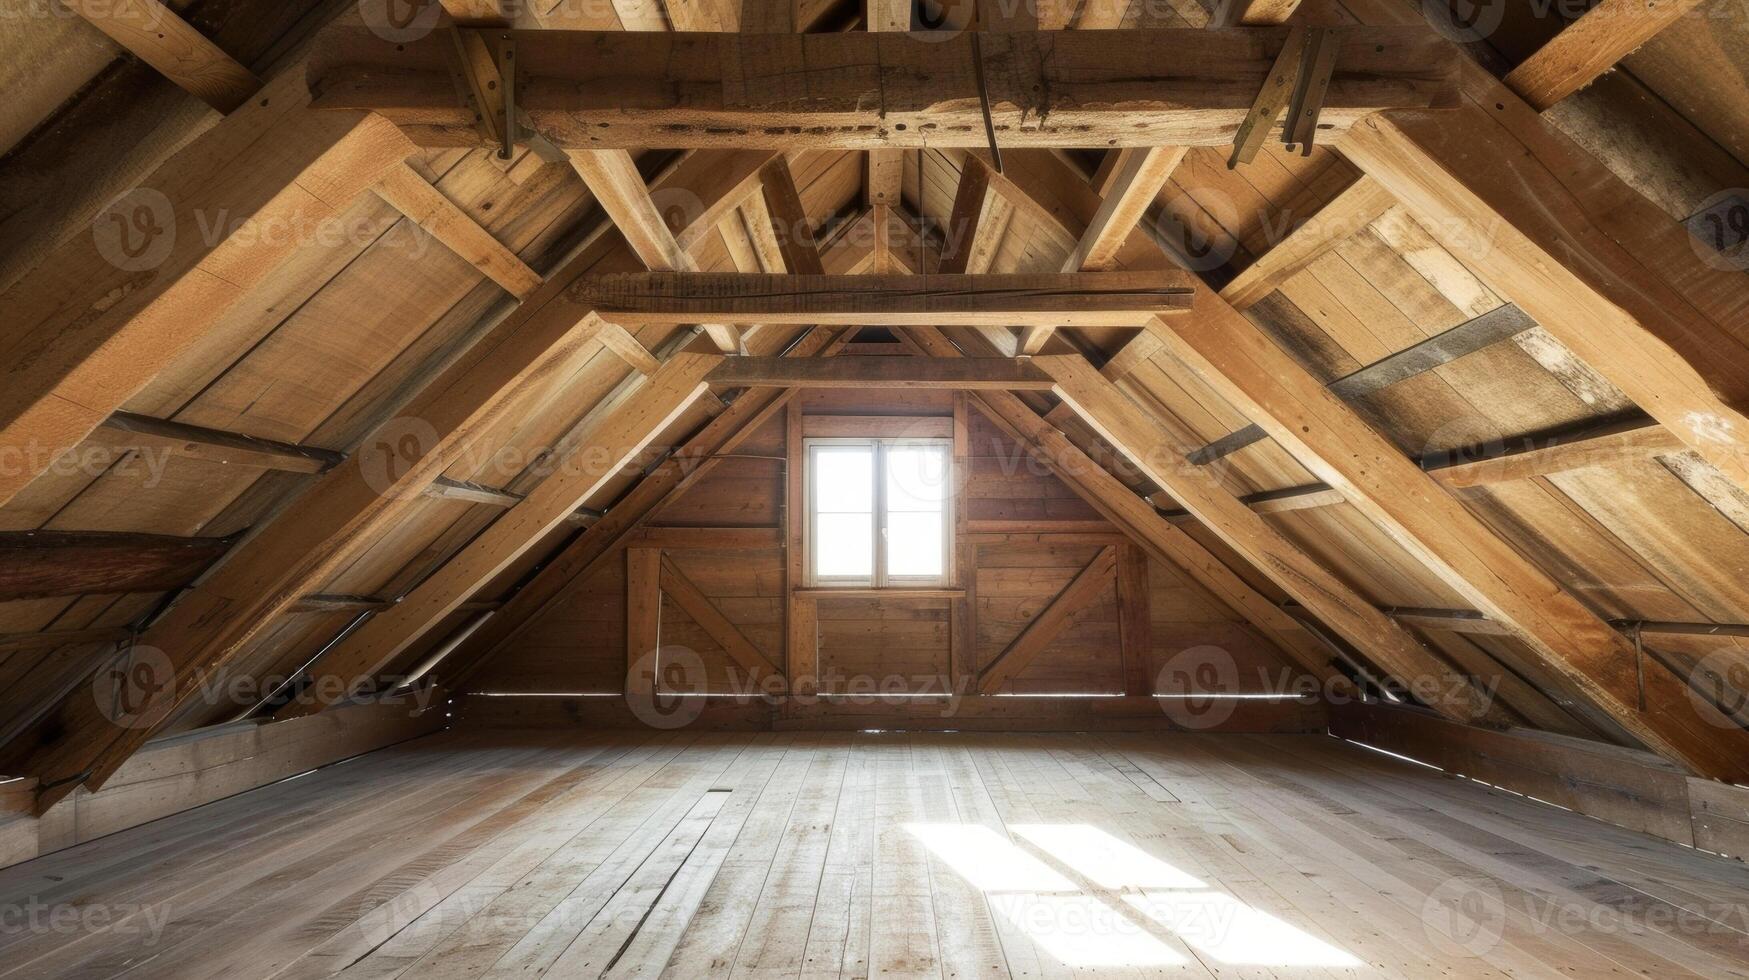 een foto van een gerenoveerd zolder met de oud houten balken blootgesteld en voorzichtig hersteld gebruik makend van traditioneel Scandinavisch hout behandeling ods brengen warmte en geschiedenis naar th